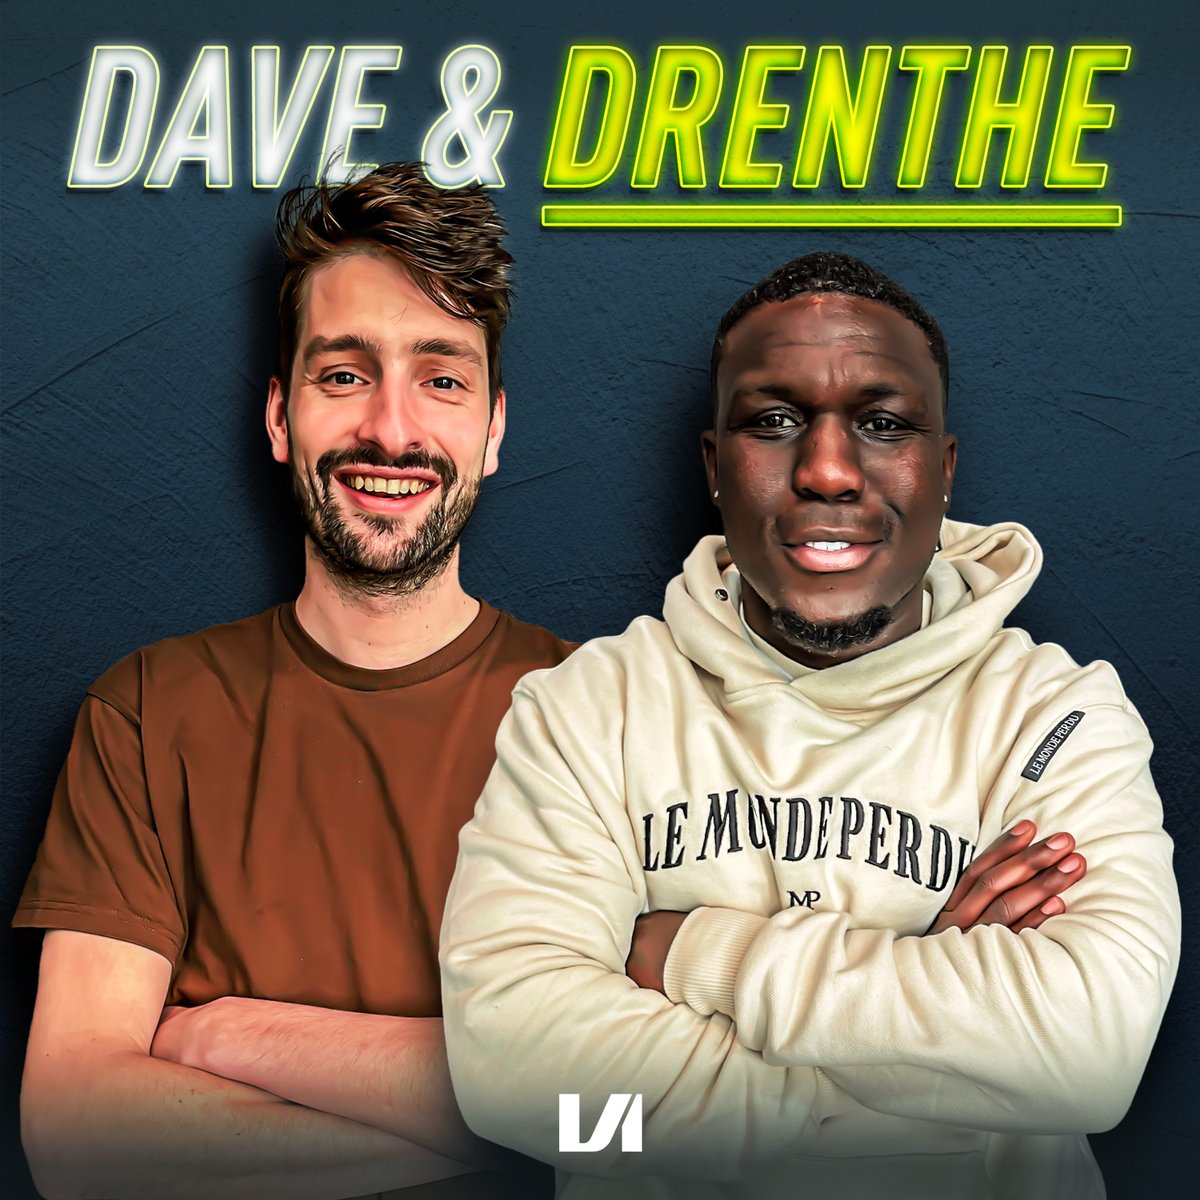 Hard aan gewerkt en al een aantal mooie avonturen samen achter de rug! In de nieuwe podcast Dave & Drenthe bespreken Royston Drenthe en ik afwijkende voetbalverhalen. Steeds schuiven bijzondere gasten aan die het voetbalwereldje kleur geven.